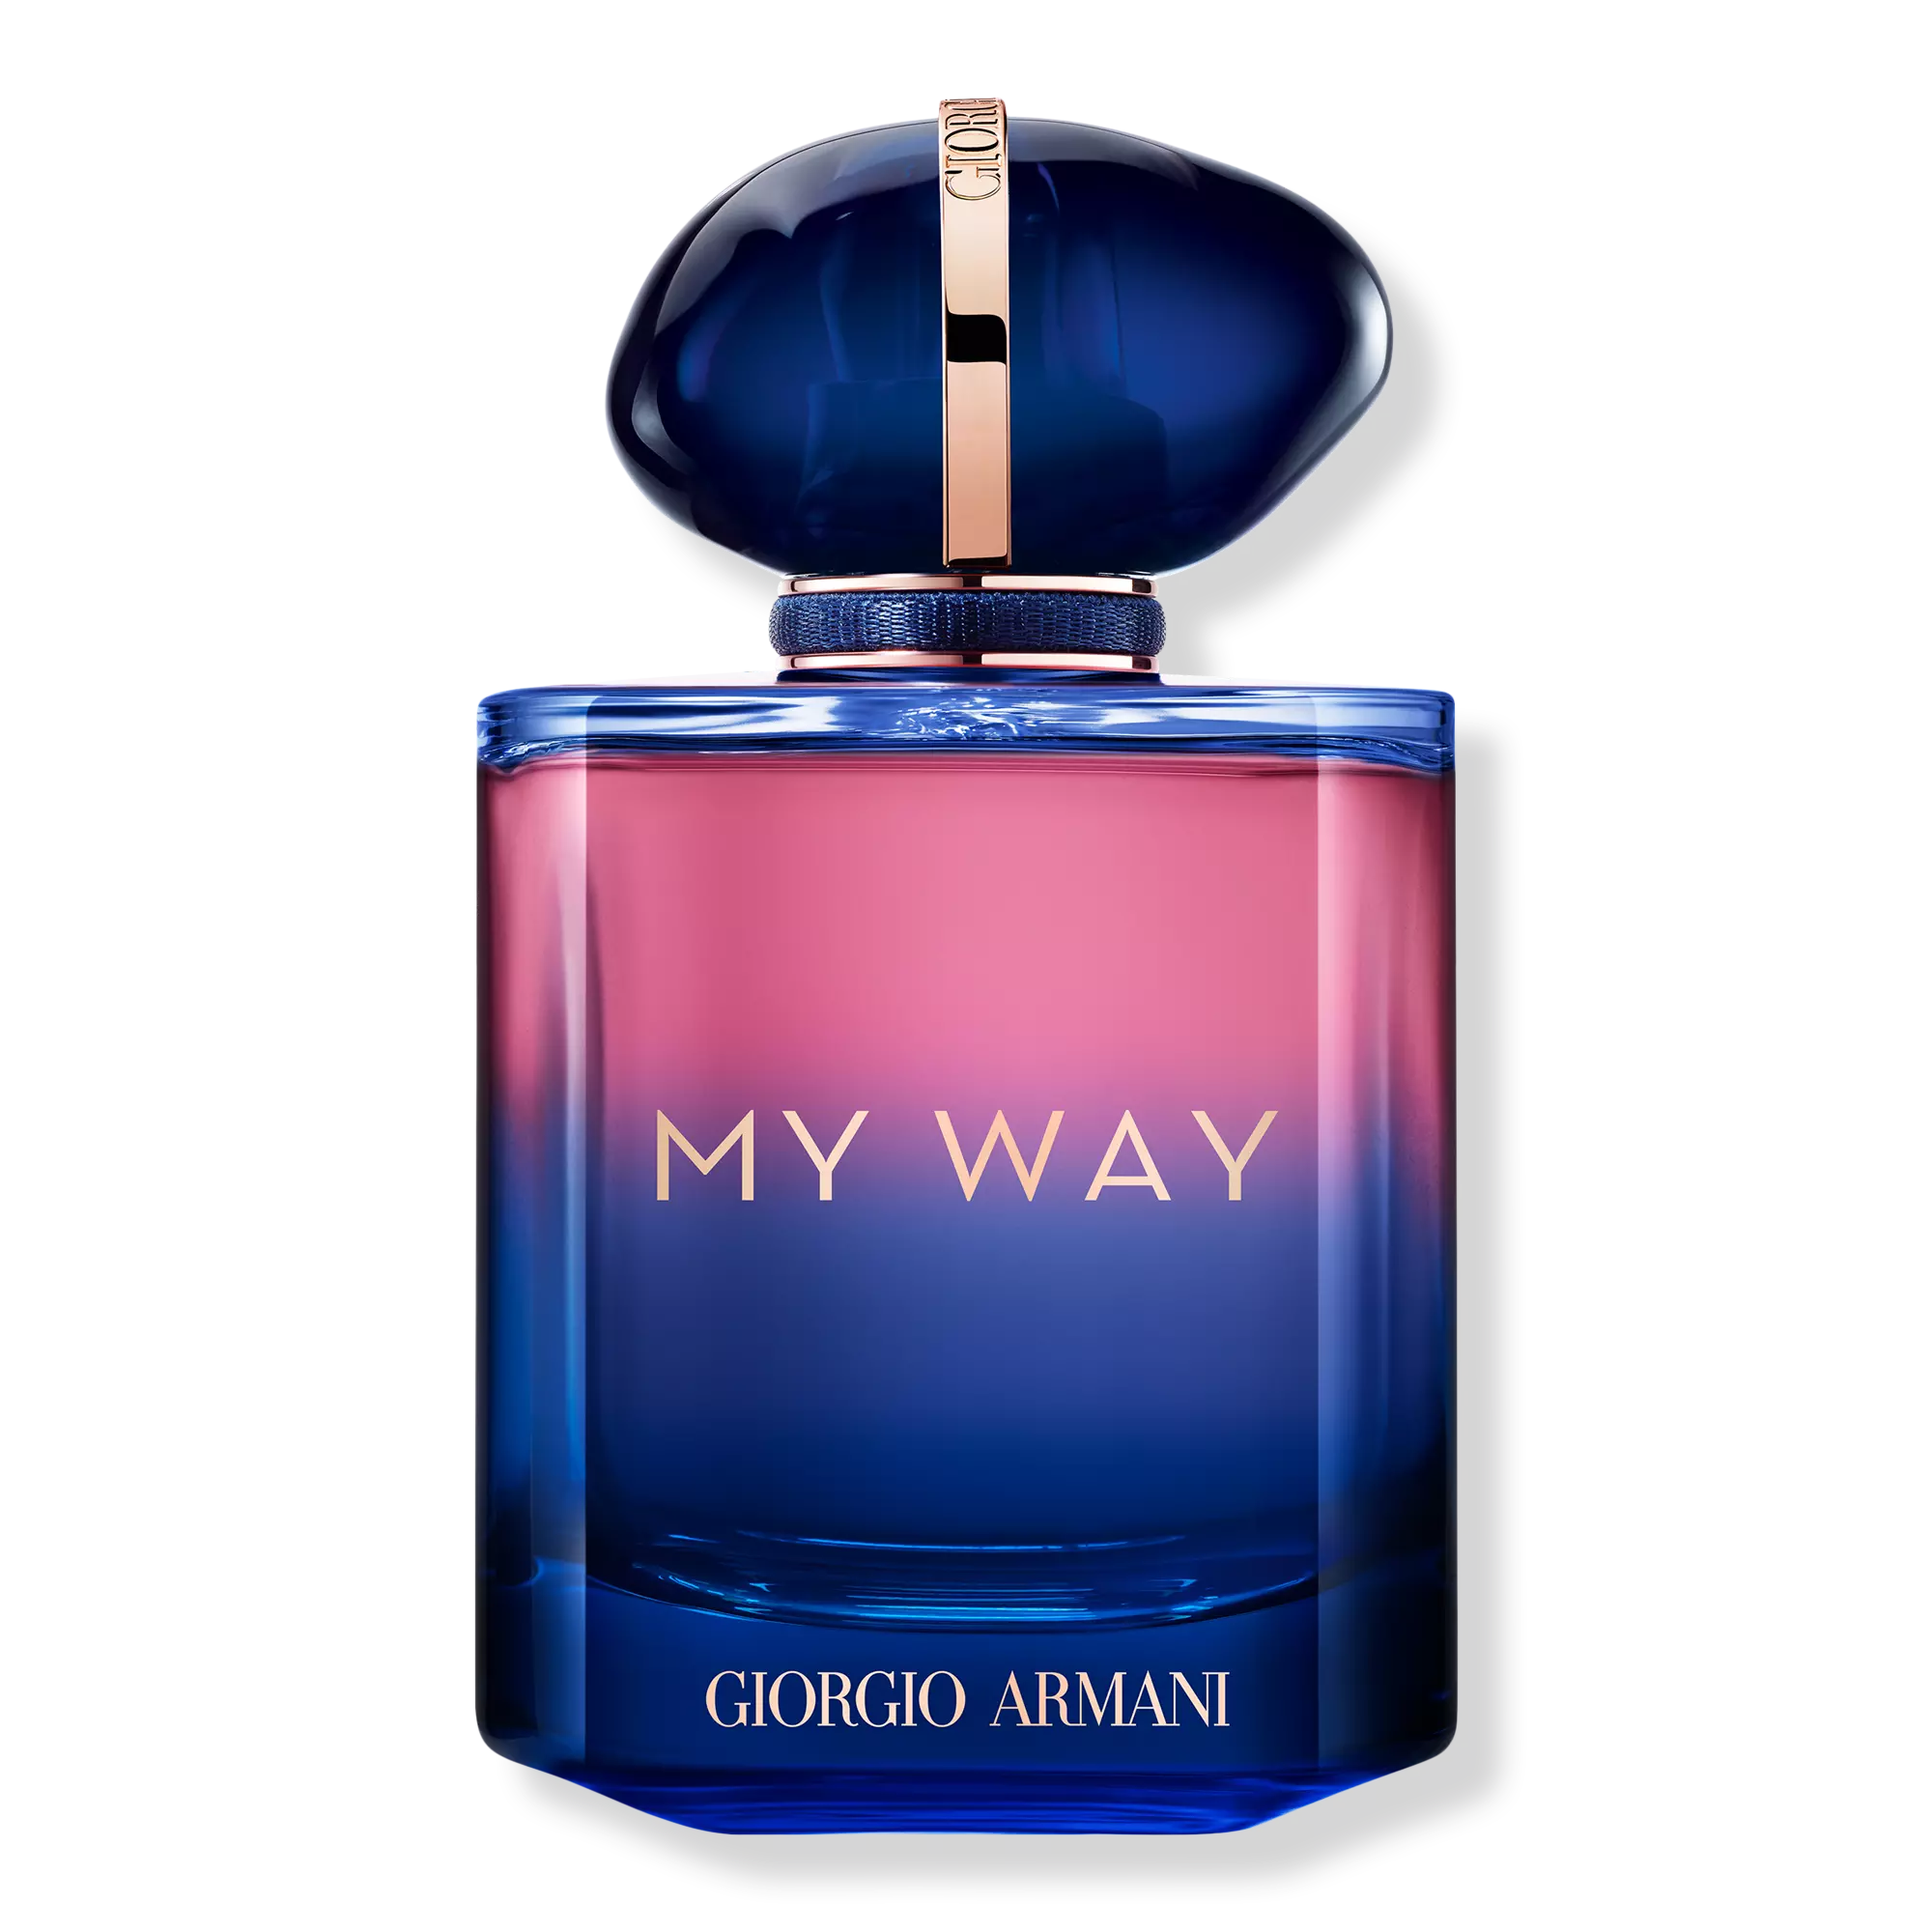 Perfume Giorgio Armani My Way Le Parfum (W) / 90 ml - 3614273927352- Prive Perfumes Honduras